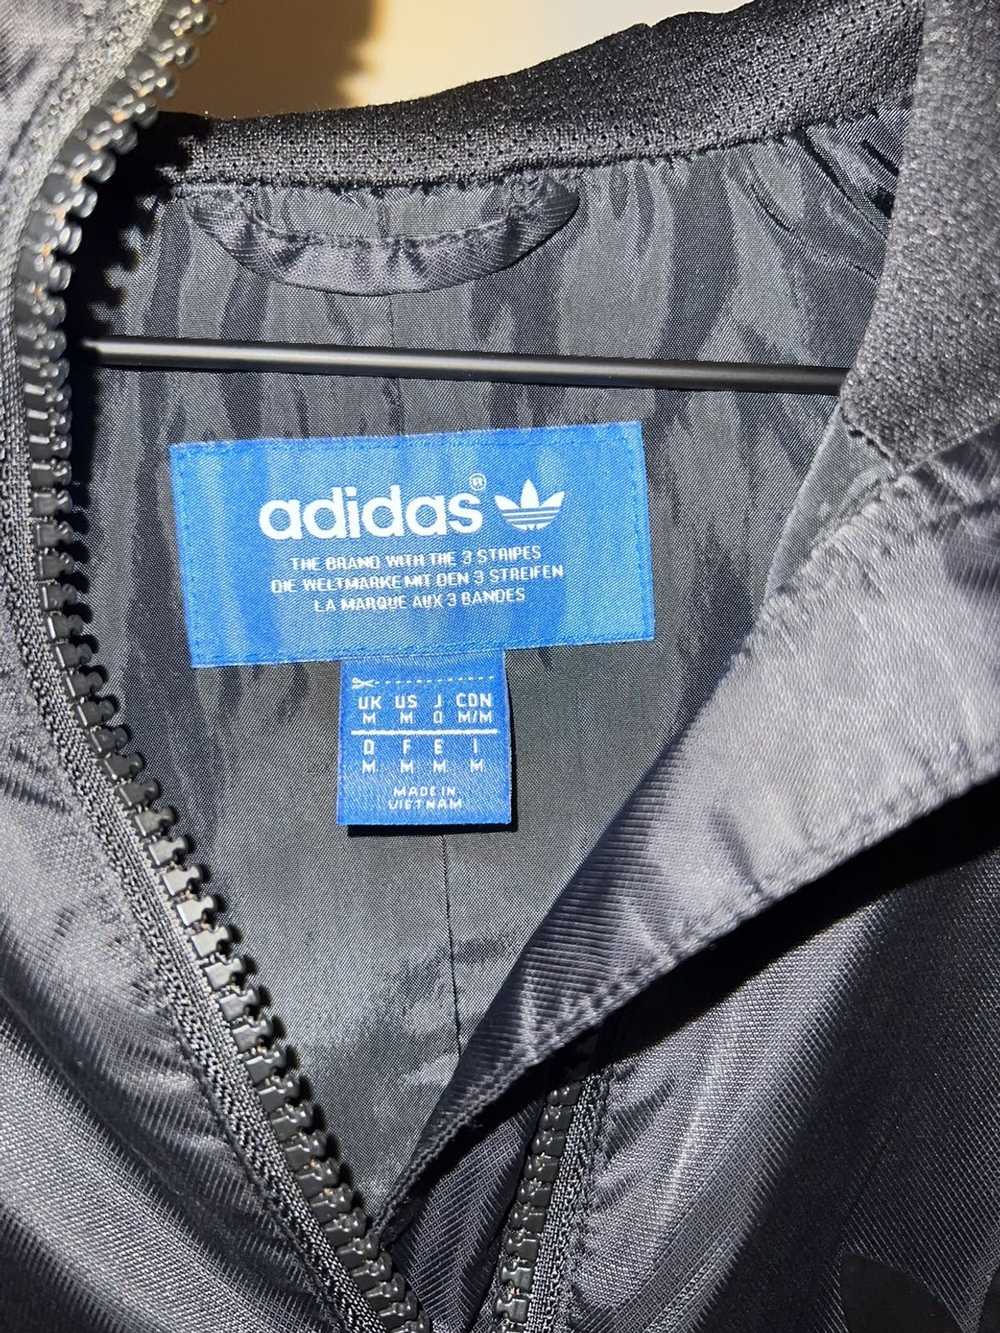 Adidas Adidas Anorak Jacket - image 3